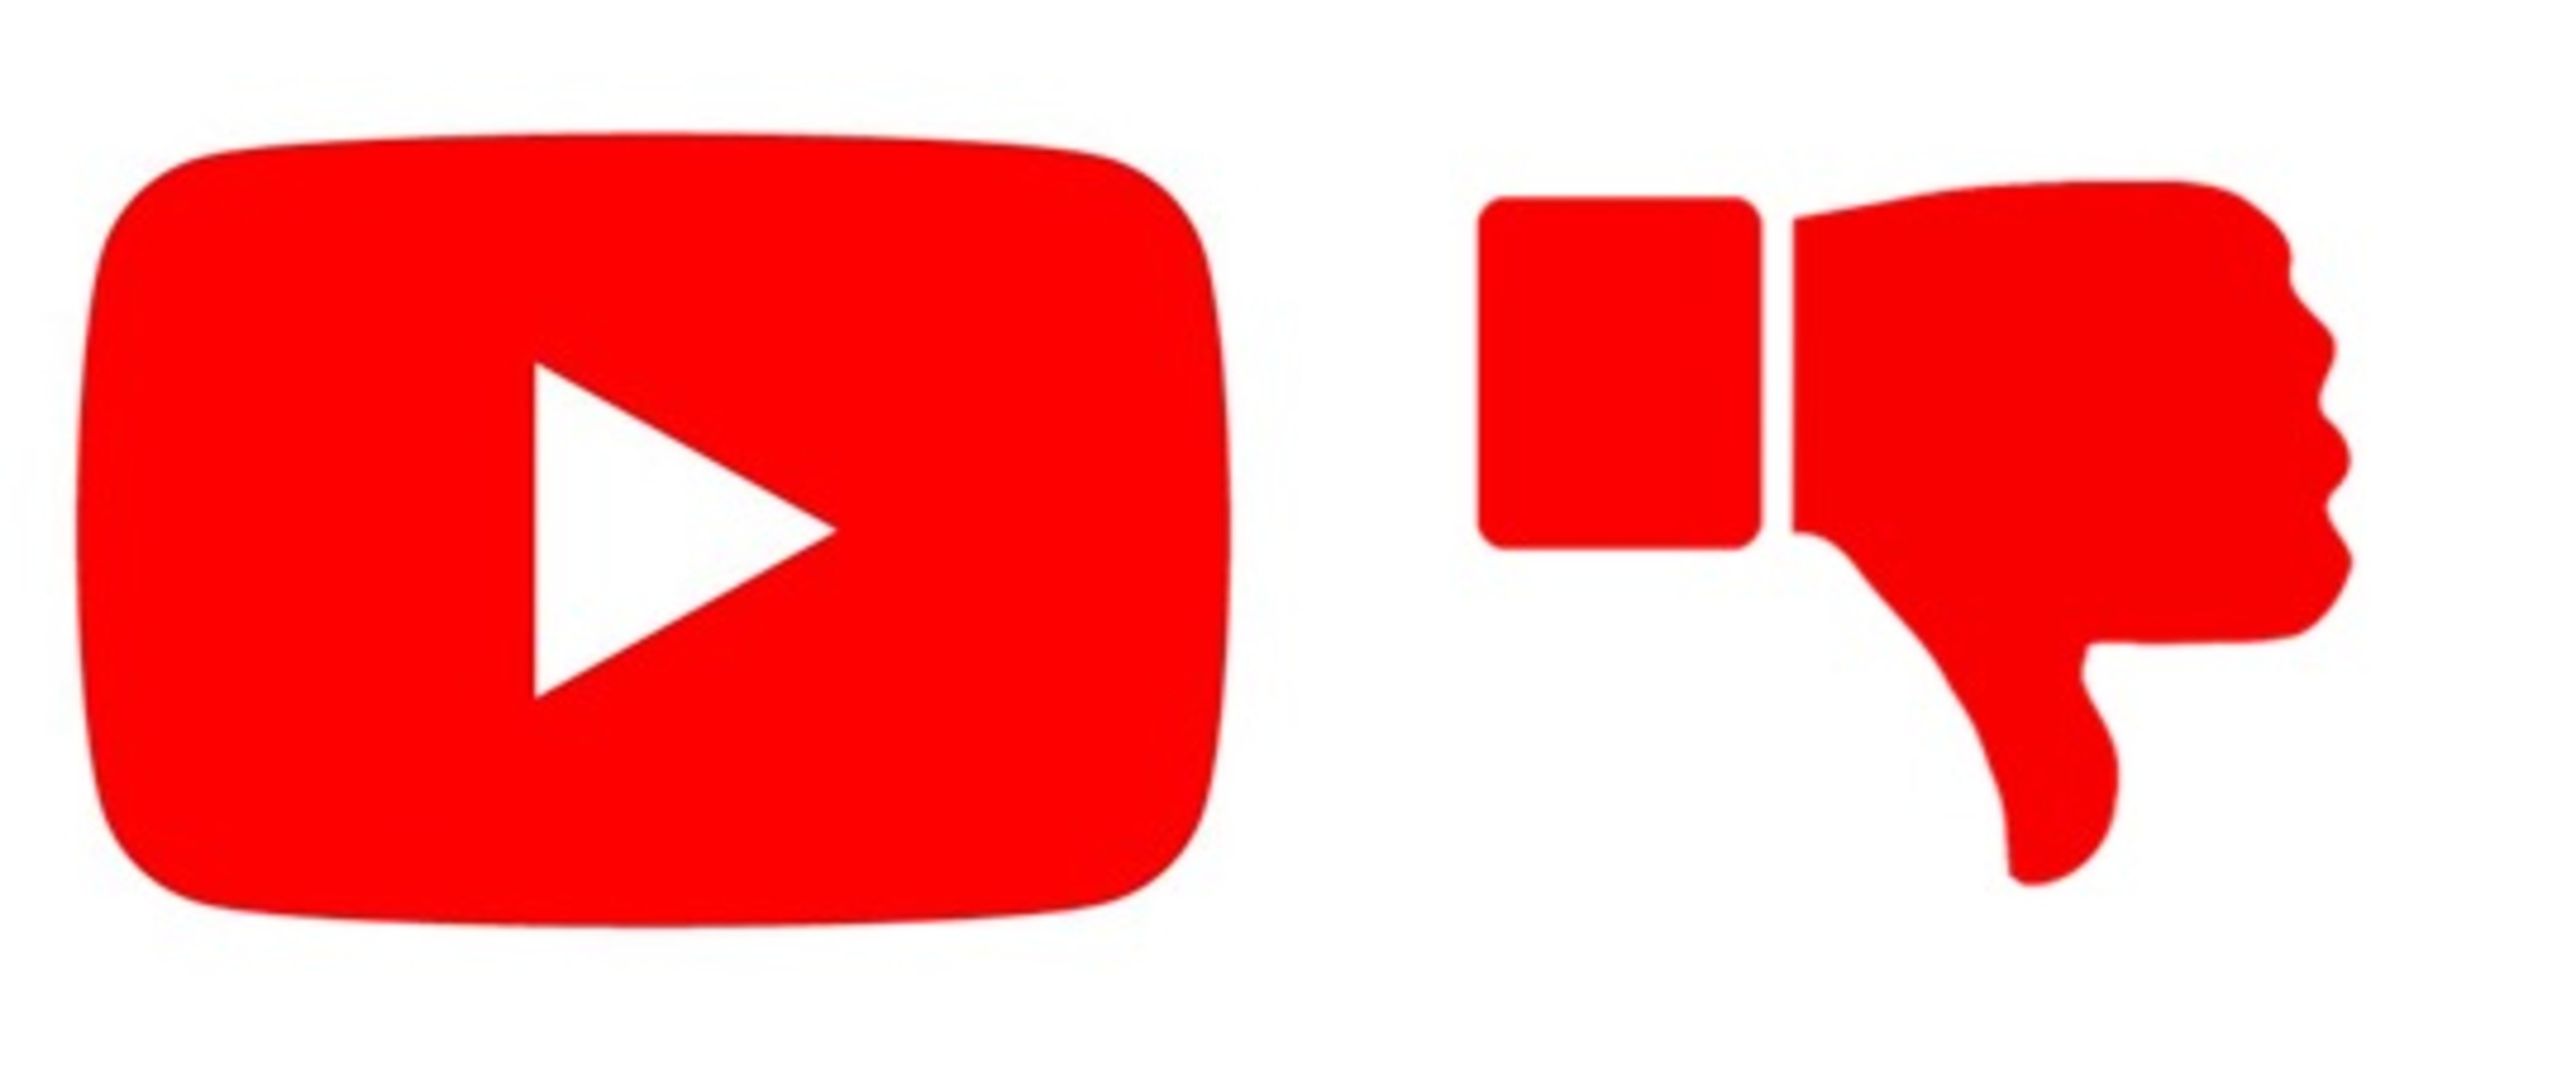 YouTube mulai sembunyikan jumlah dislike secara publik, ini alasannya